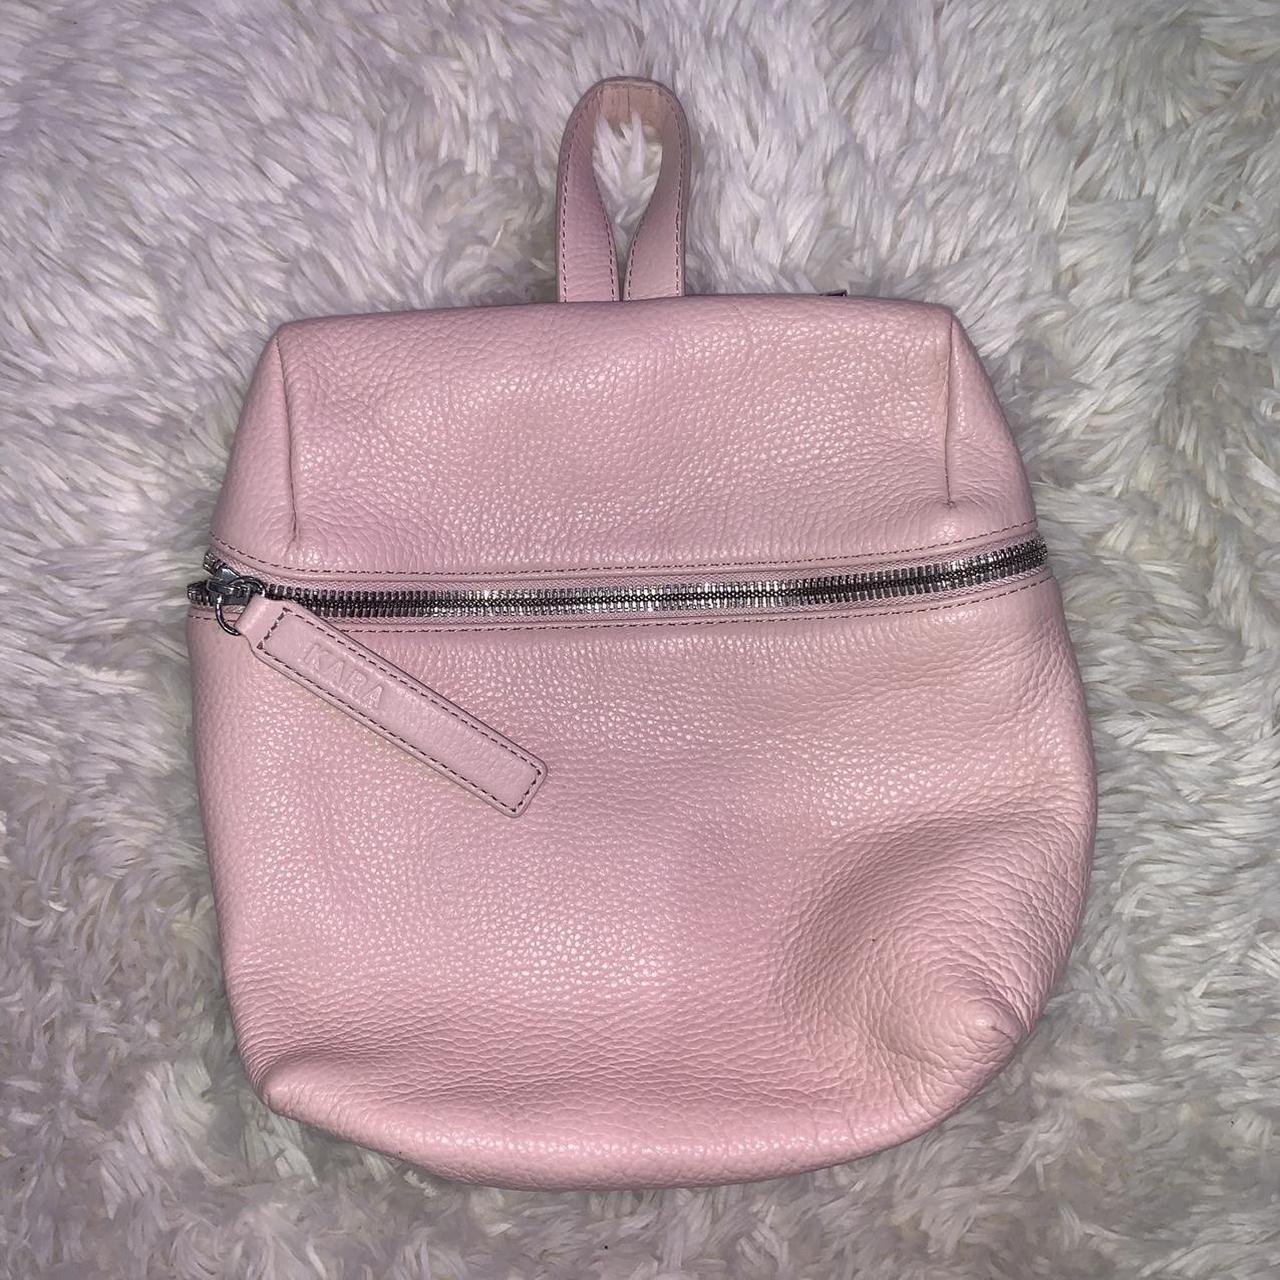 Kara Women's Pink Bag